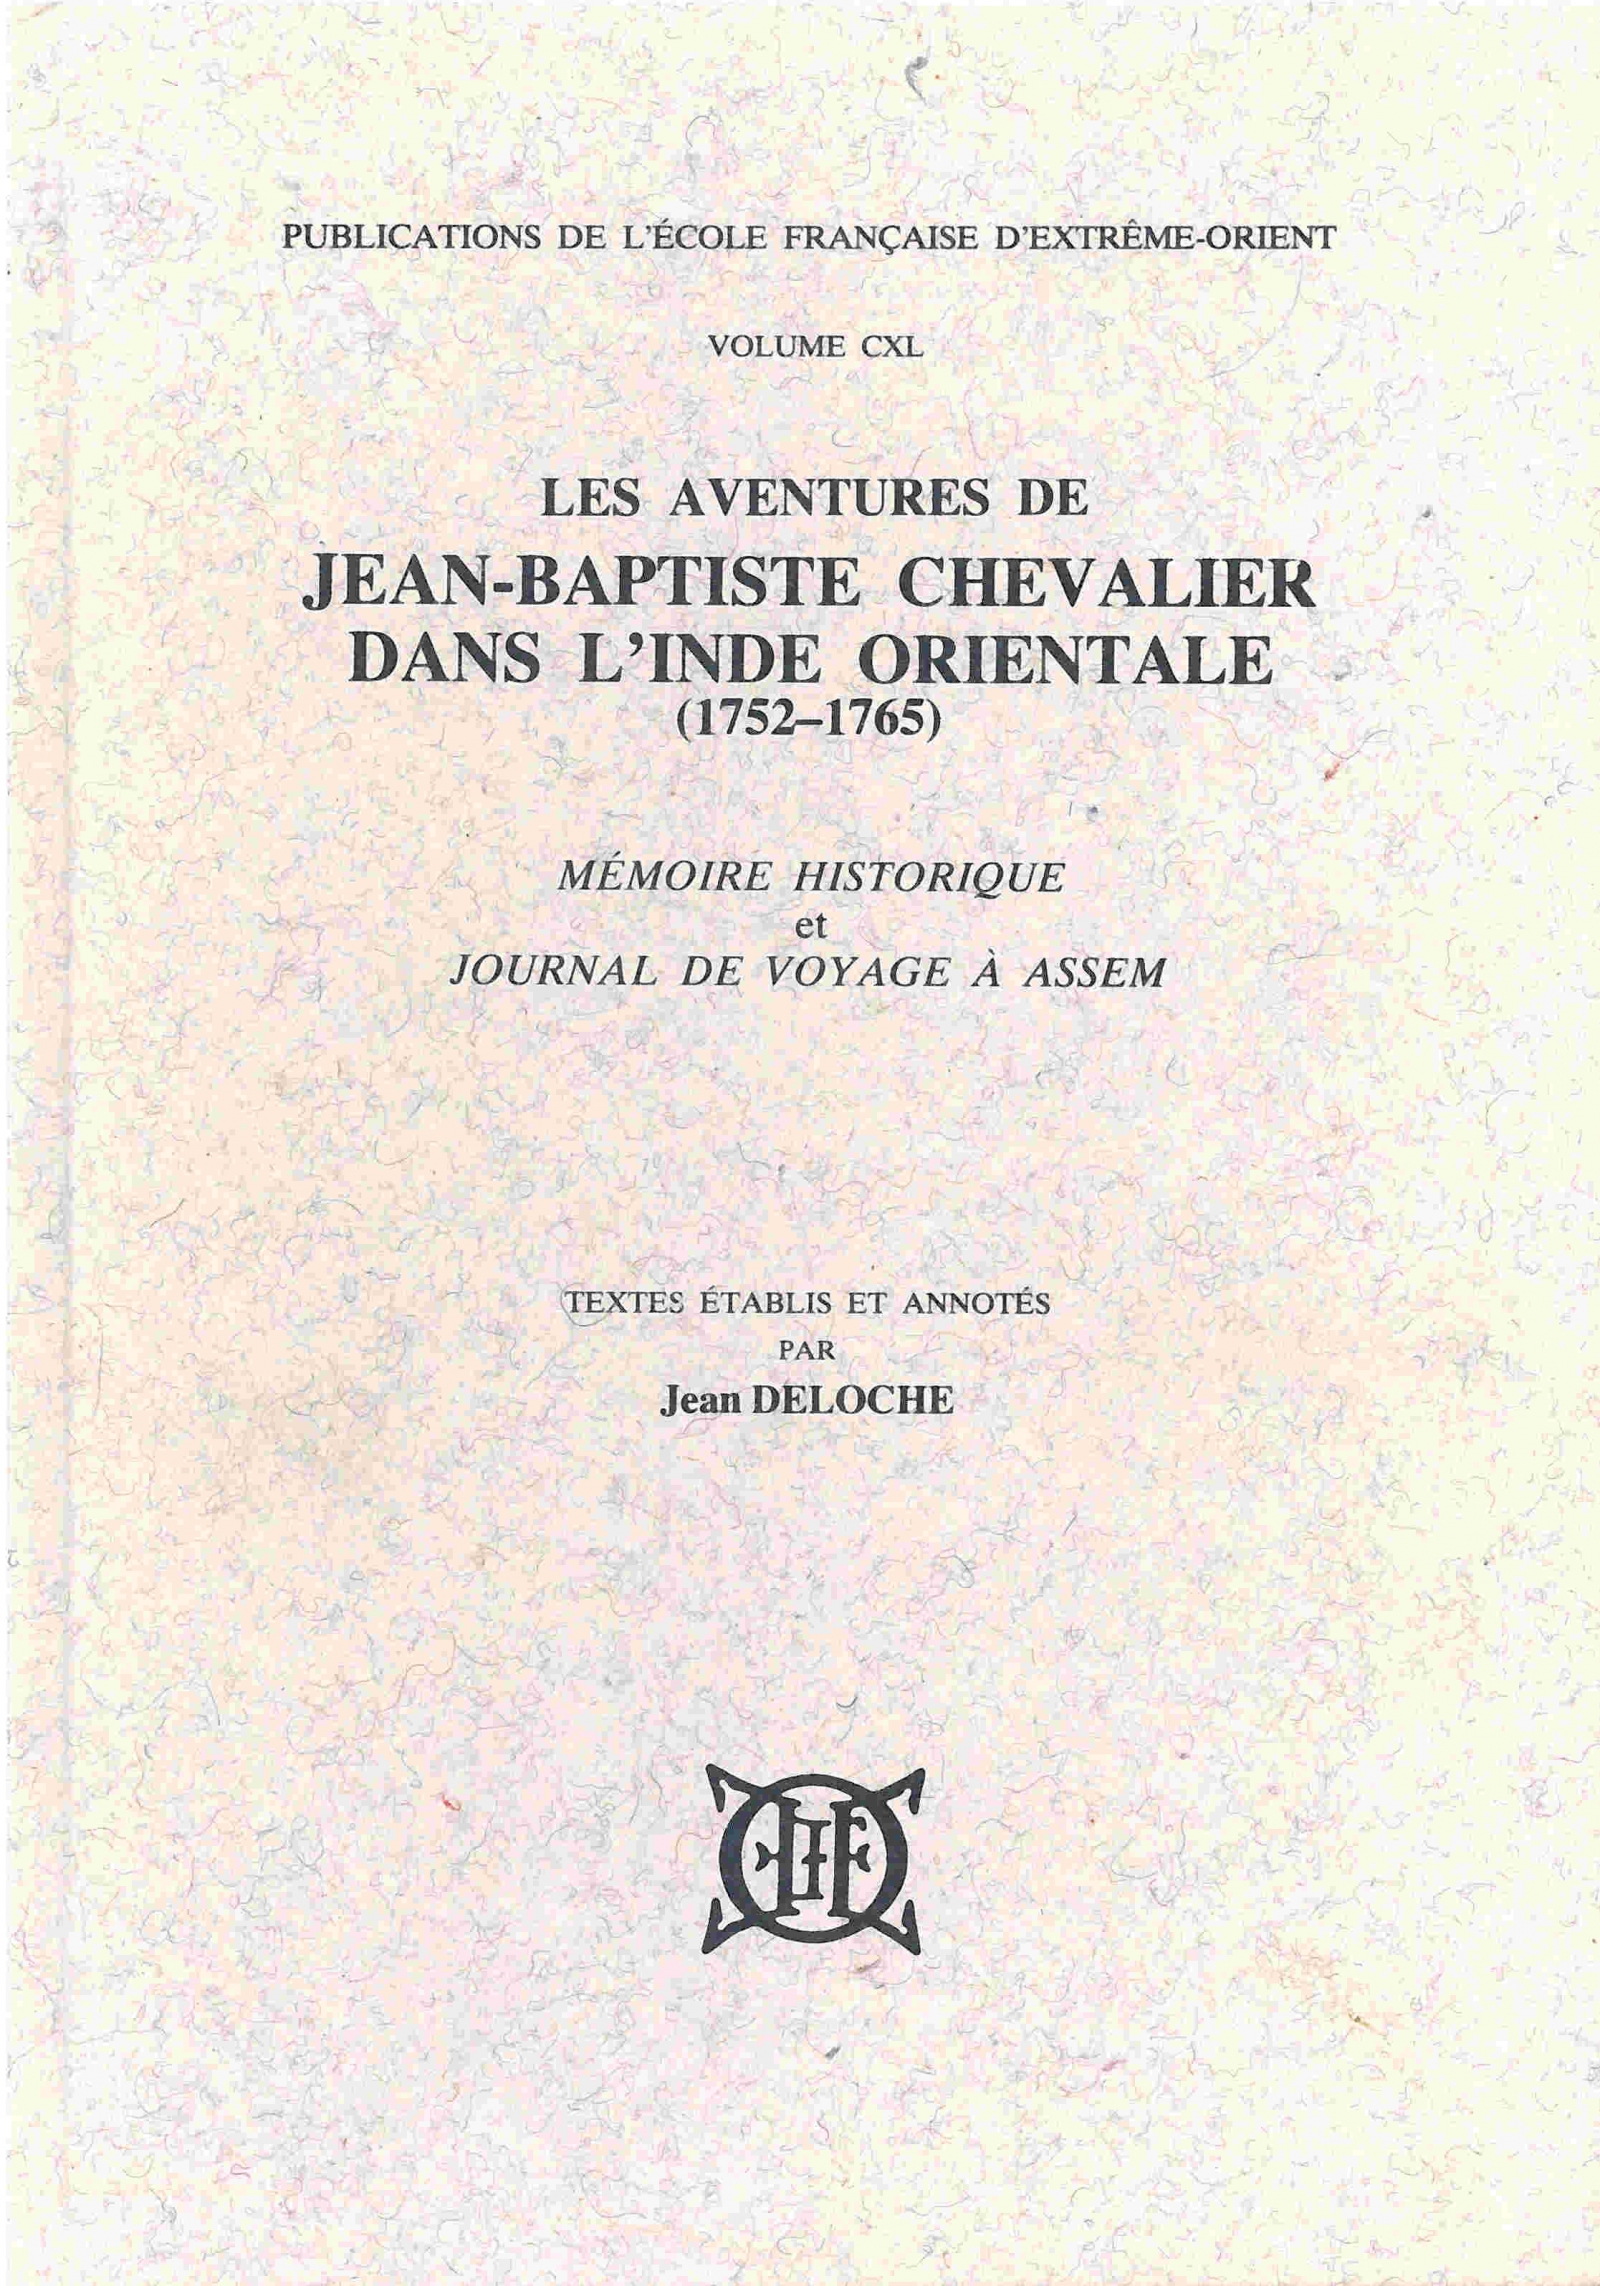 Les aventures de Jean-Baptiste Chevalier dans l'Inde orientale (1752-1765)